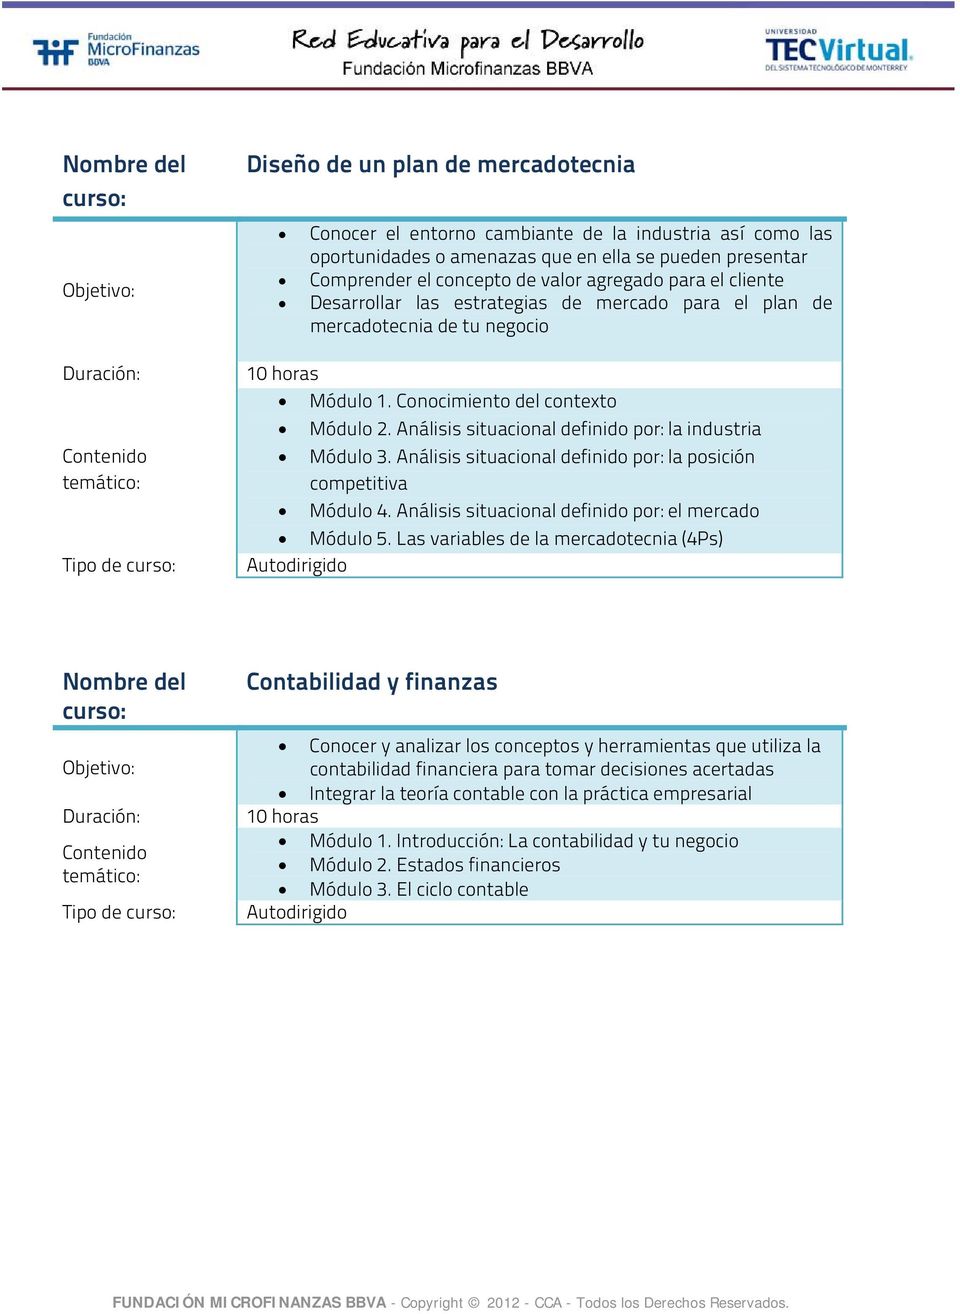 Análisis situacional definido por: la posición competitiva Módulo 4. Análisis situacional definido por: el mercado Módulo 5.